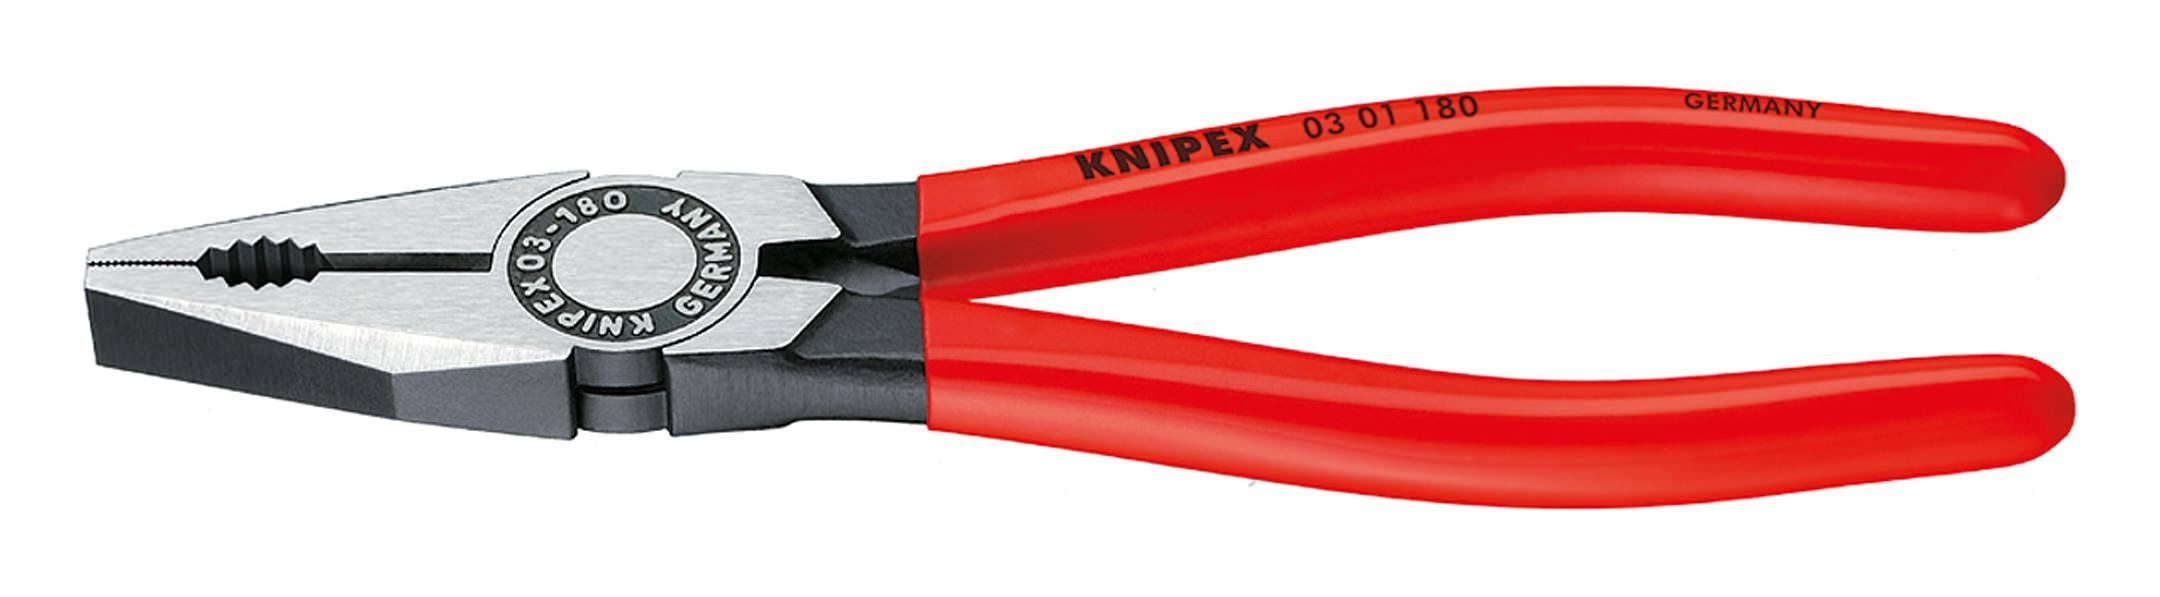 Knipex Kombizange, Nr.0301 Kombinationszange mm 200